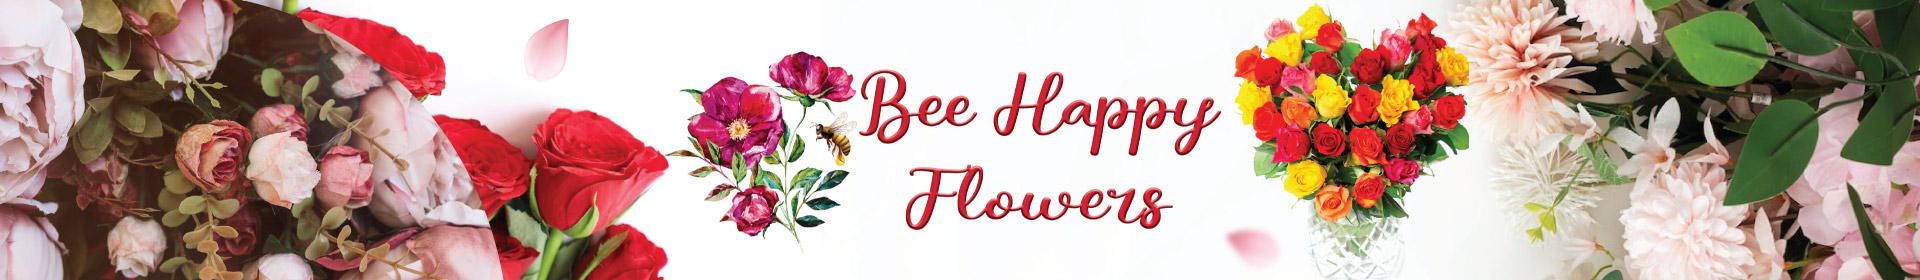 bee happy flowers